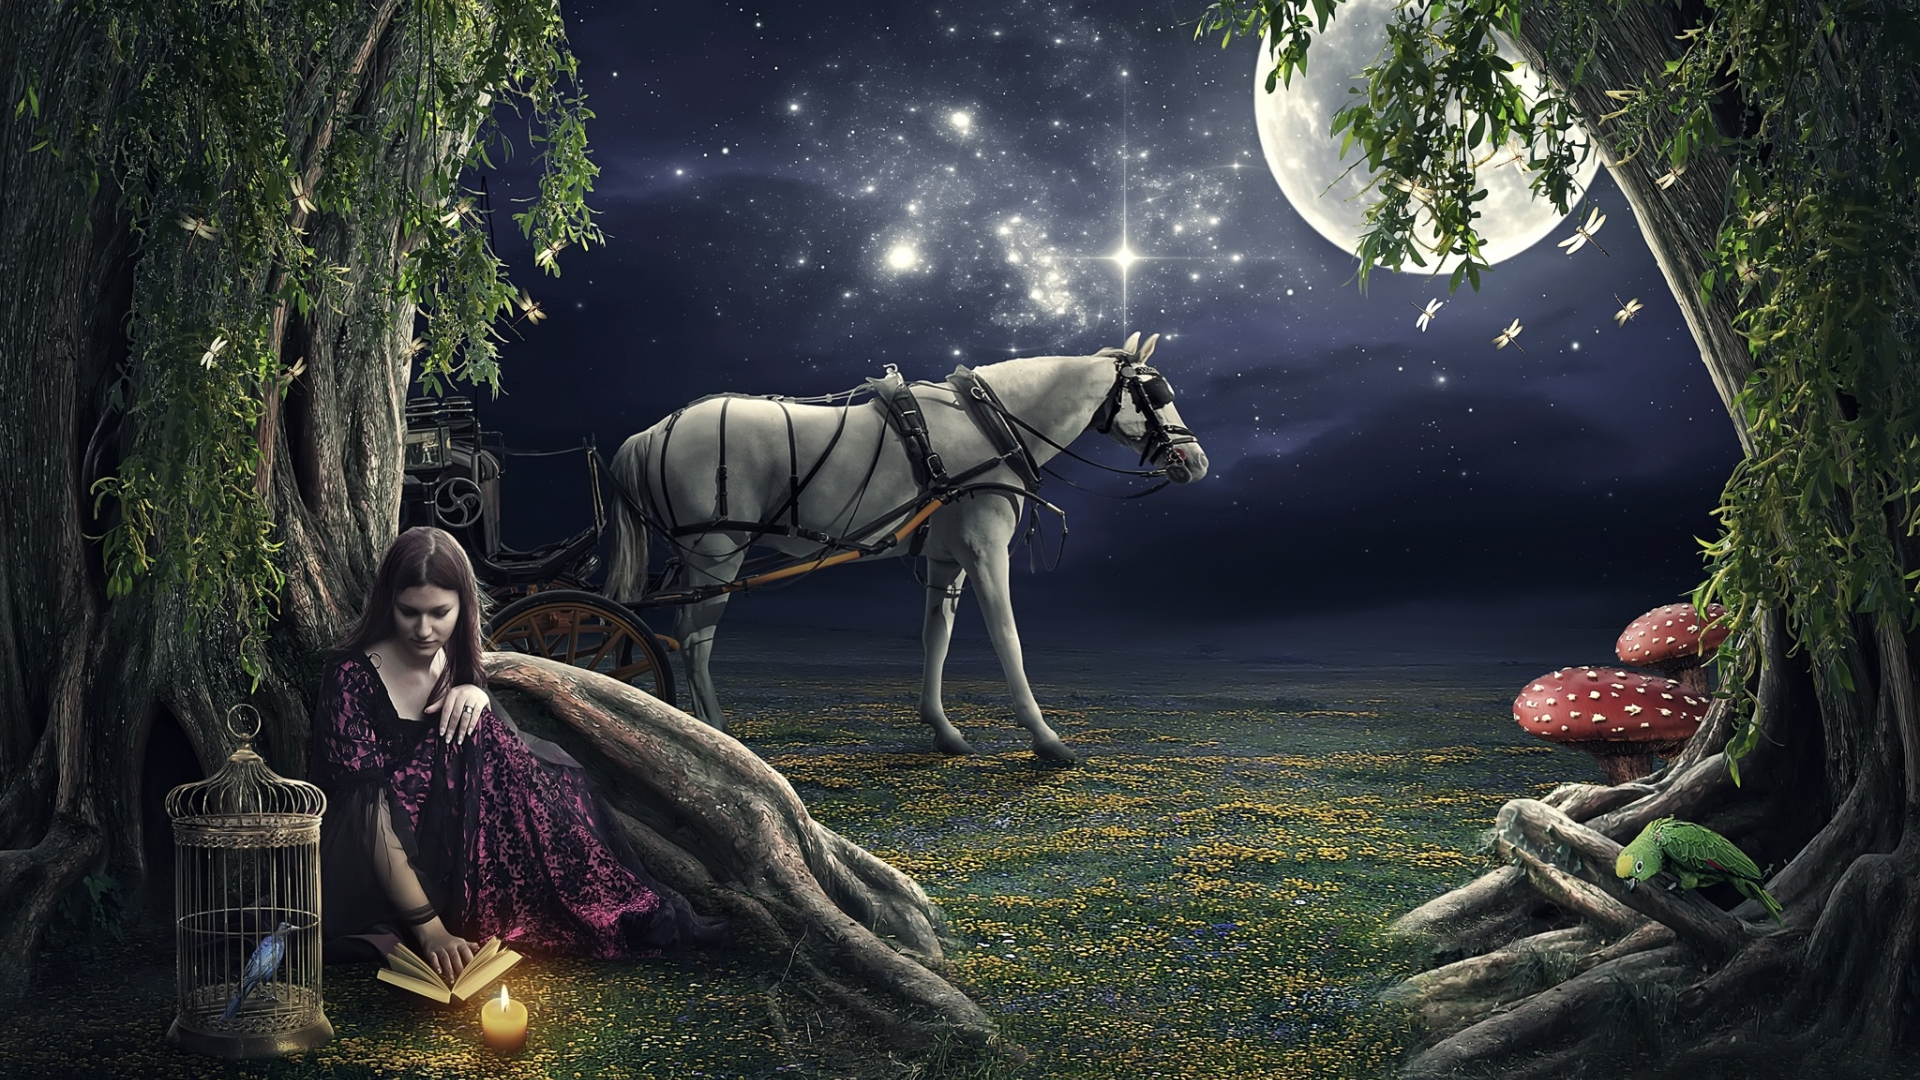 очь, девушка, свеча, клетка, лошадь, луна, звёзды, попугай, птица, дерево, книга, грибы, стрекоза